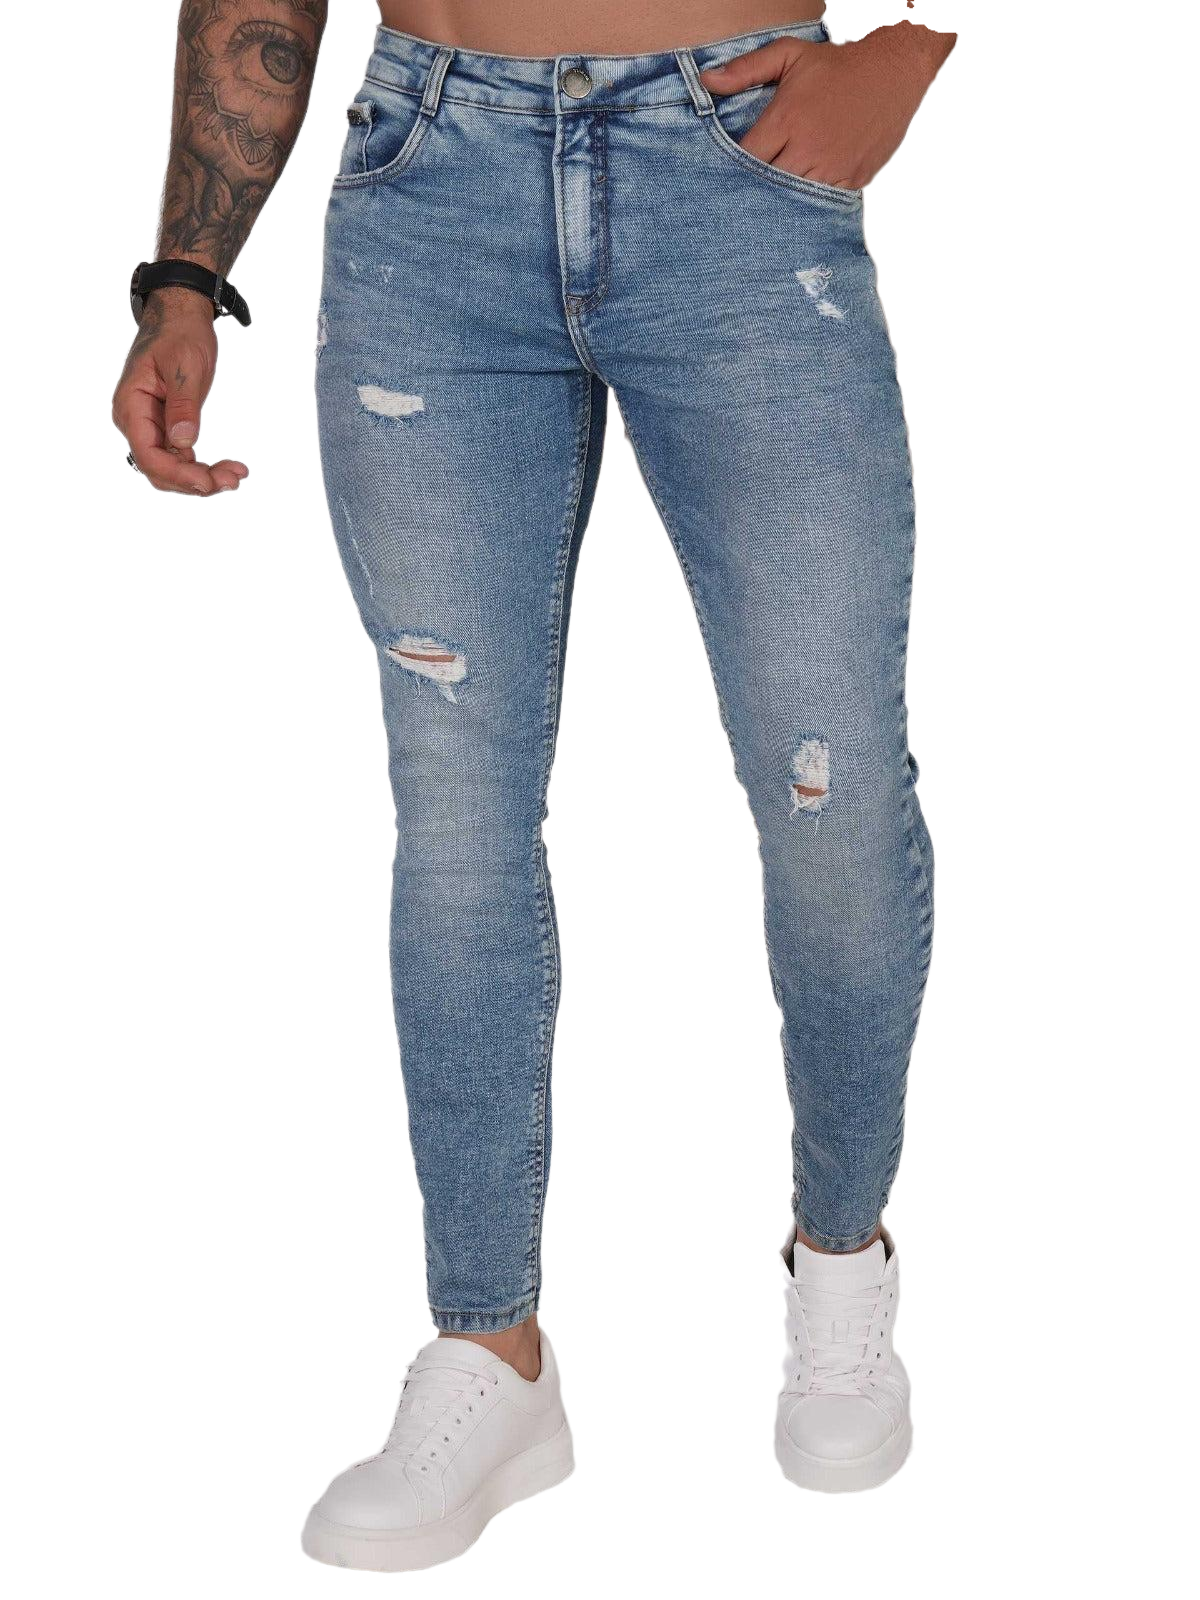 Pit Bull Jeans Men's Jeans Pants 79978